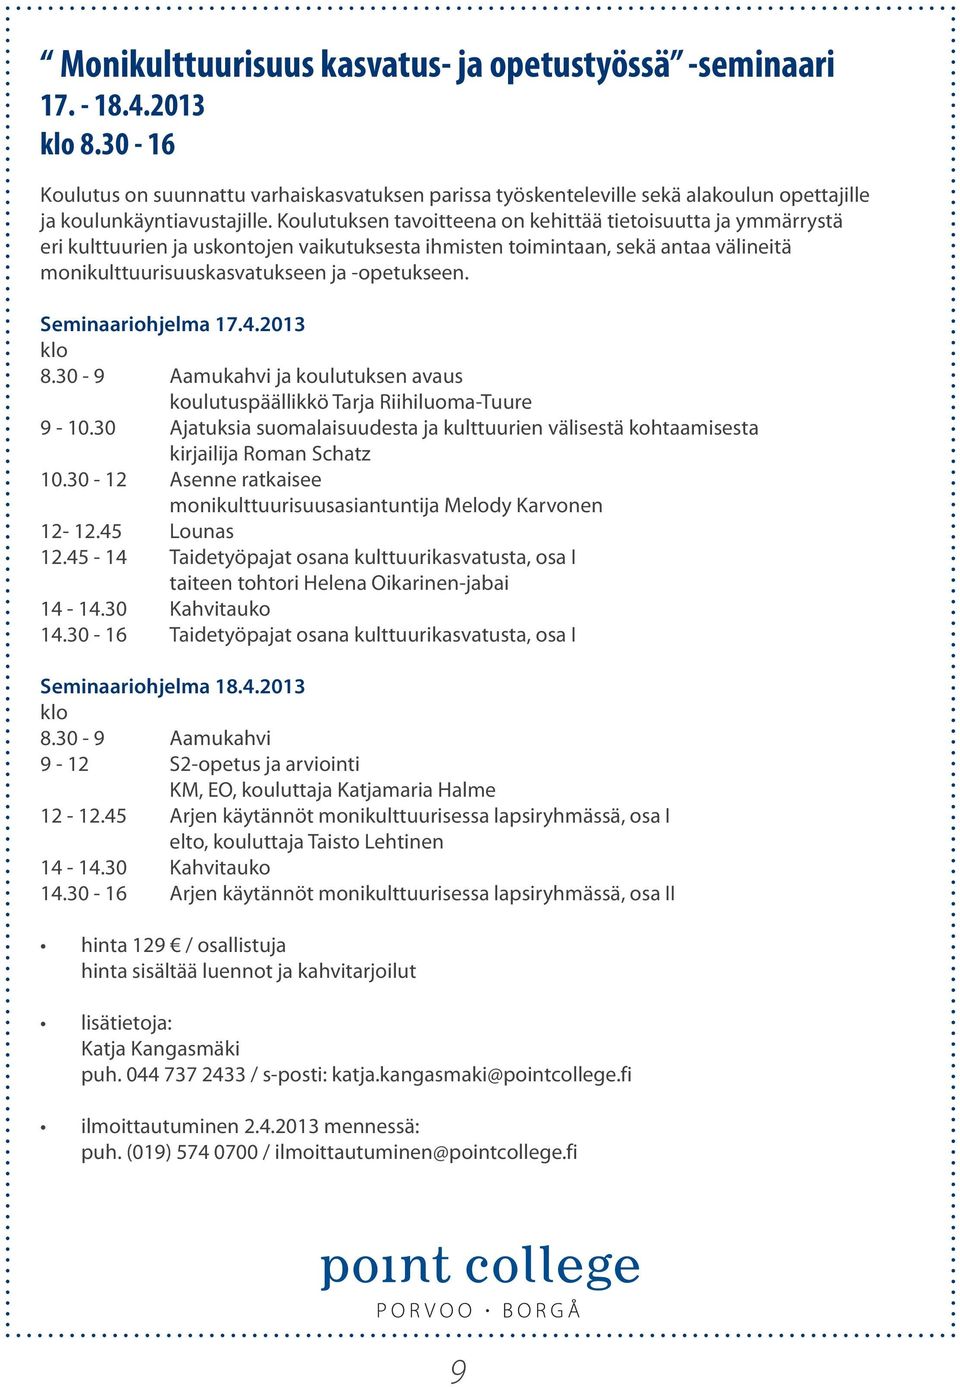 Seminaariohjelma 17.4.2013 klo 8.30-9 Aamukahvi ja koulutuksen avaus koulutuspäällikkö 9-10.30 Ajatuksia suomalaisuudesta ja kulttuurien välisestä kohtaamisesta kirjailija Roman Schatz 10.